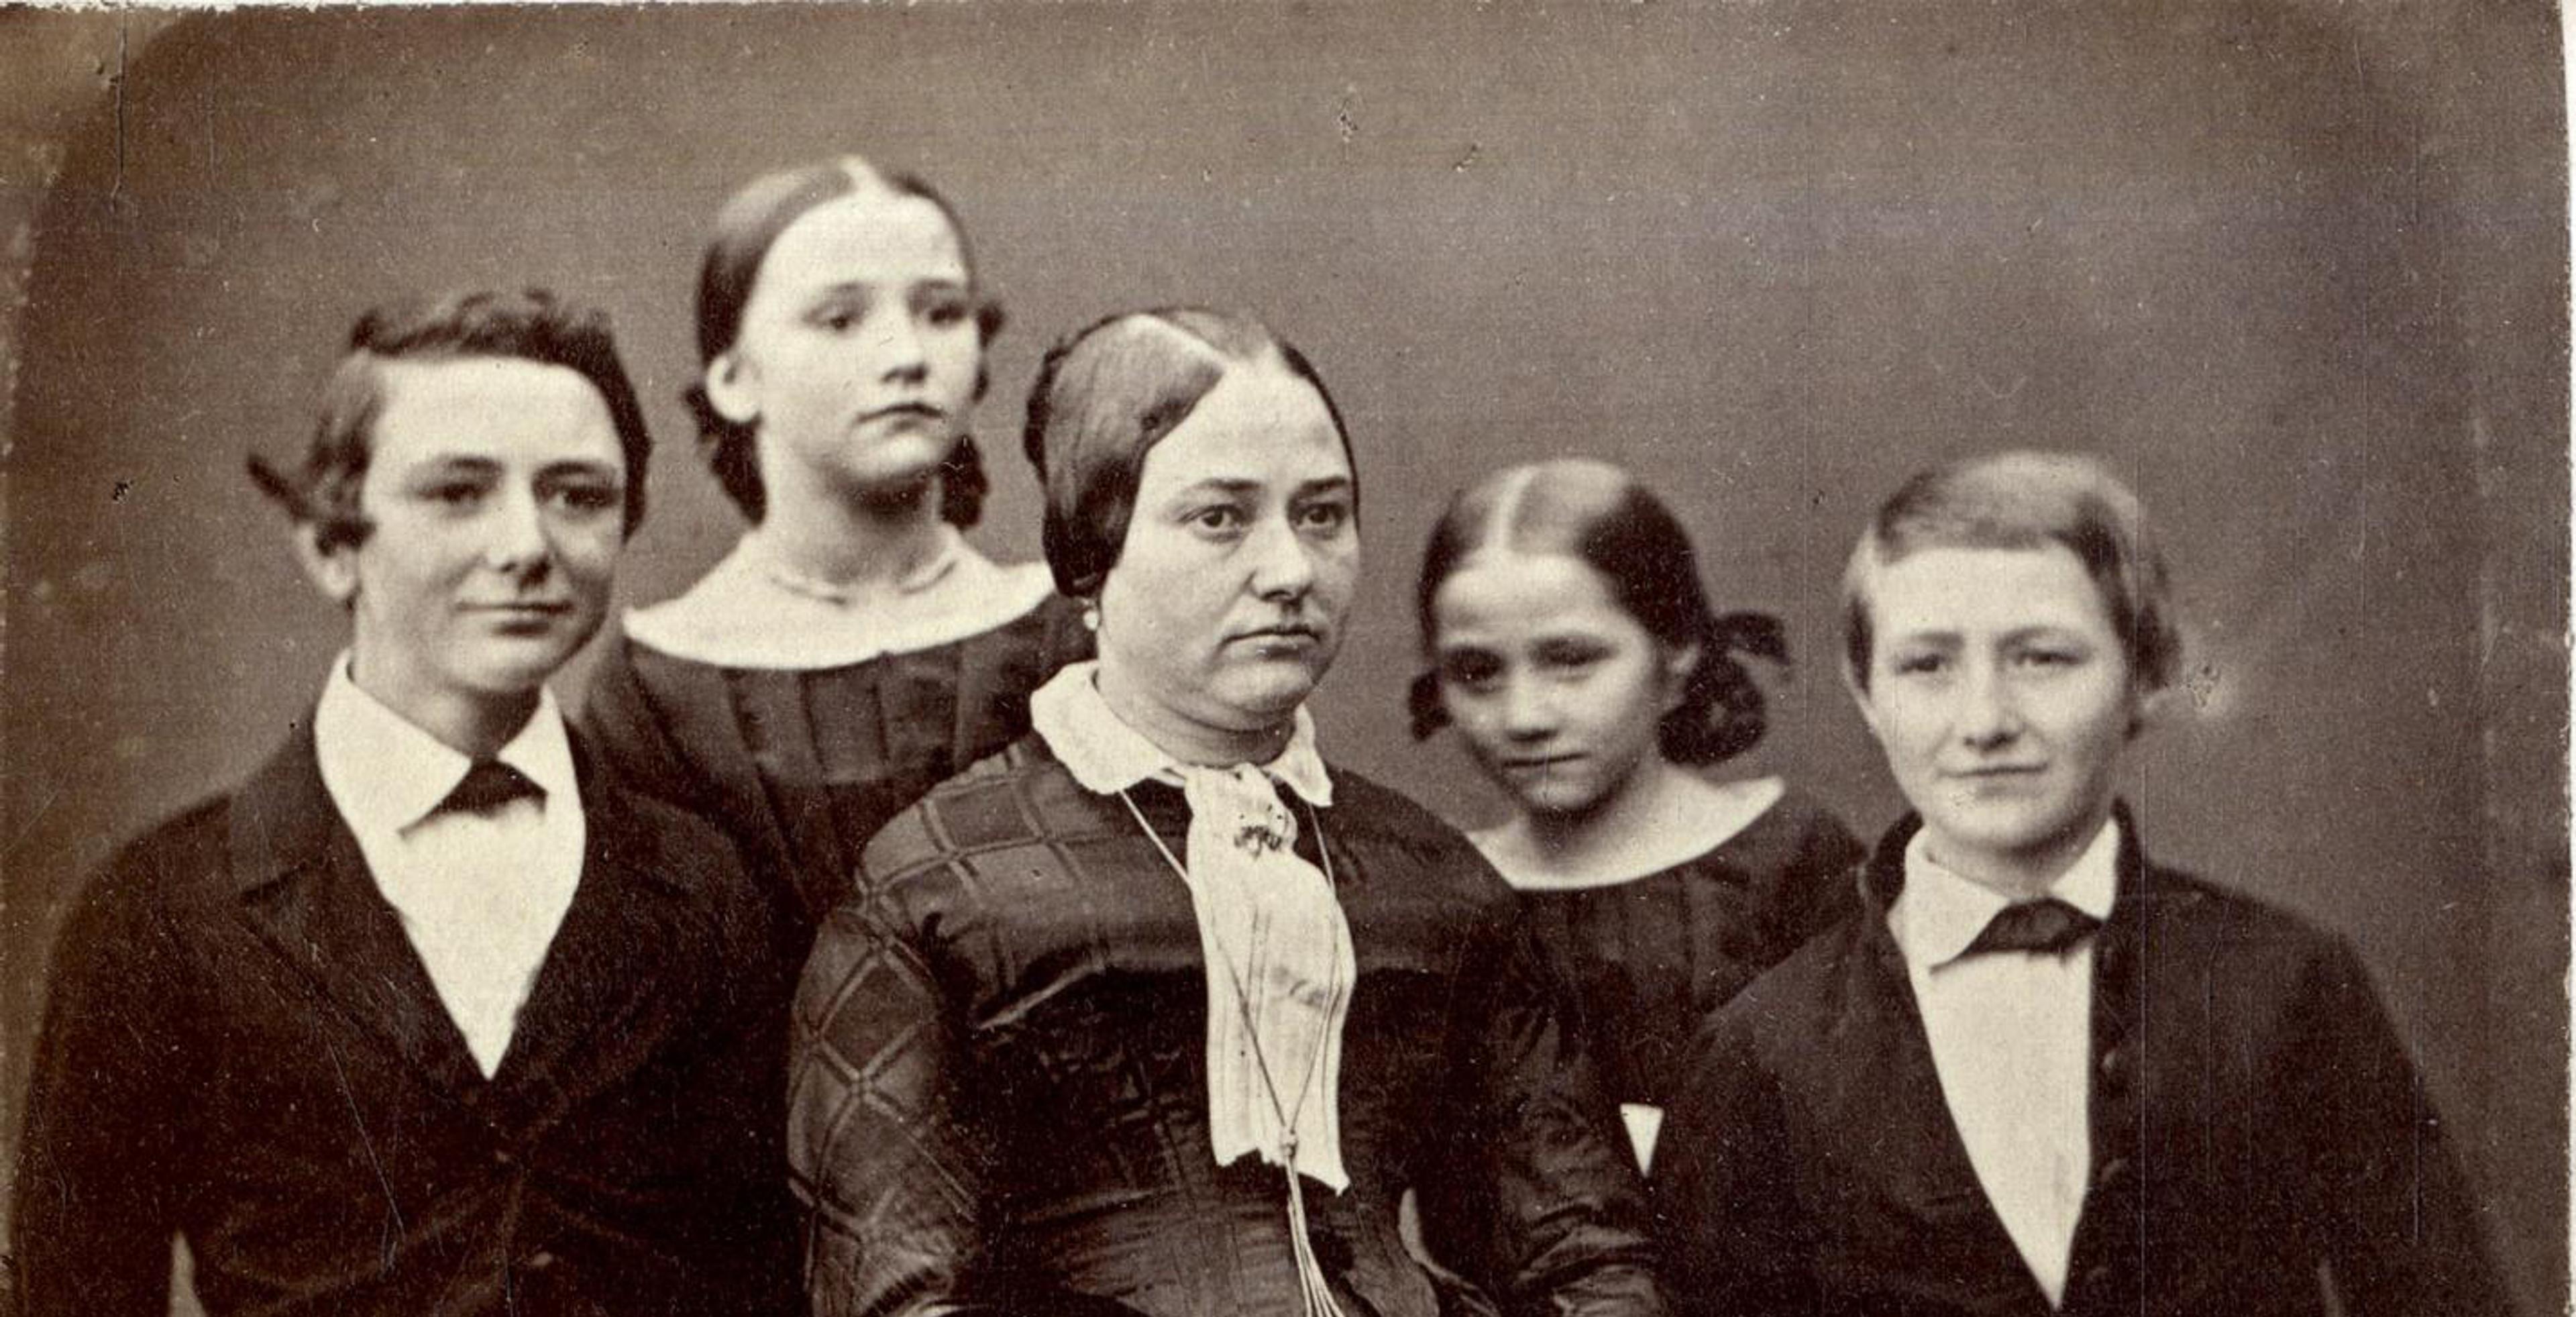 Fotografi av Ole Bulls familie som viser hans første kone sammen med fire barn i ulik barneskolealder.